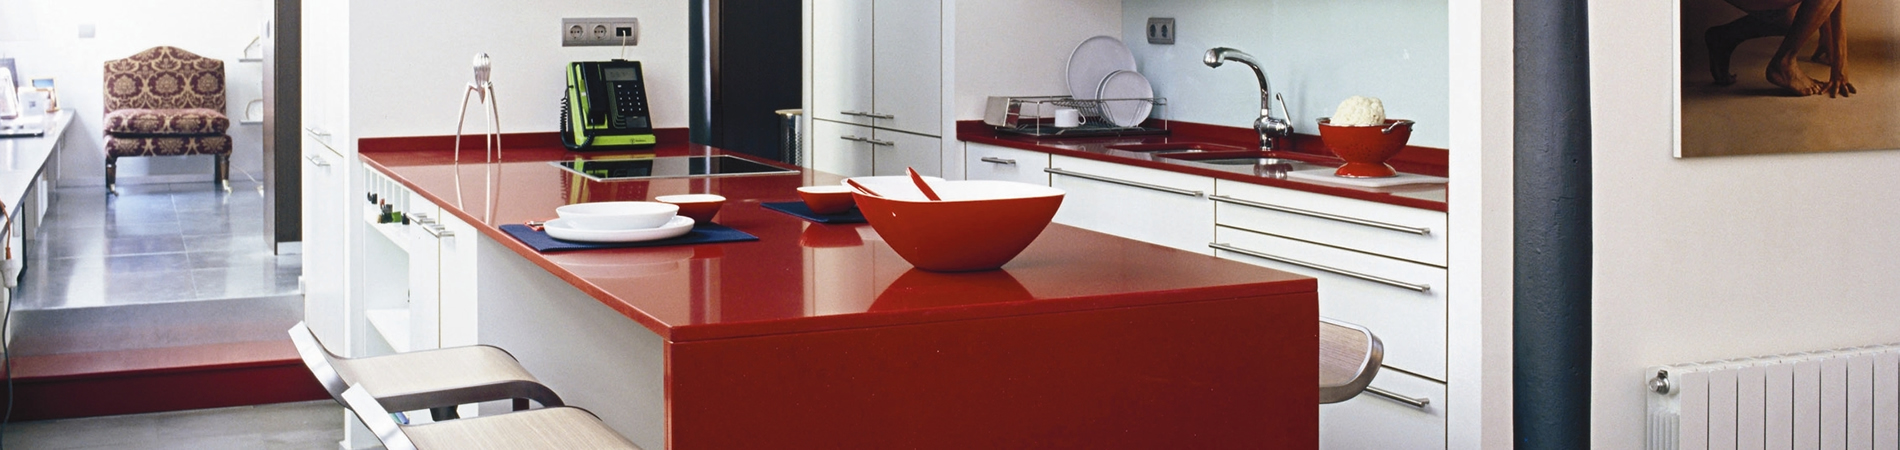 Radiant and modern kitchen worktops Silestone 